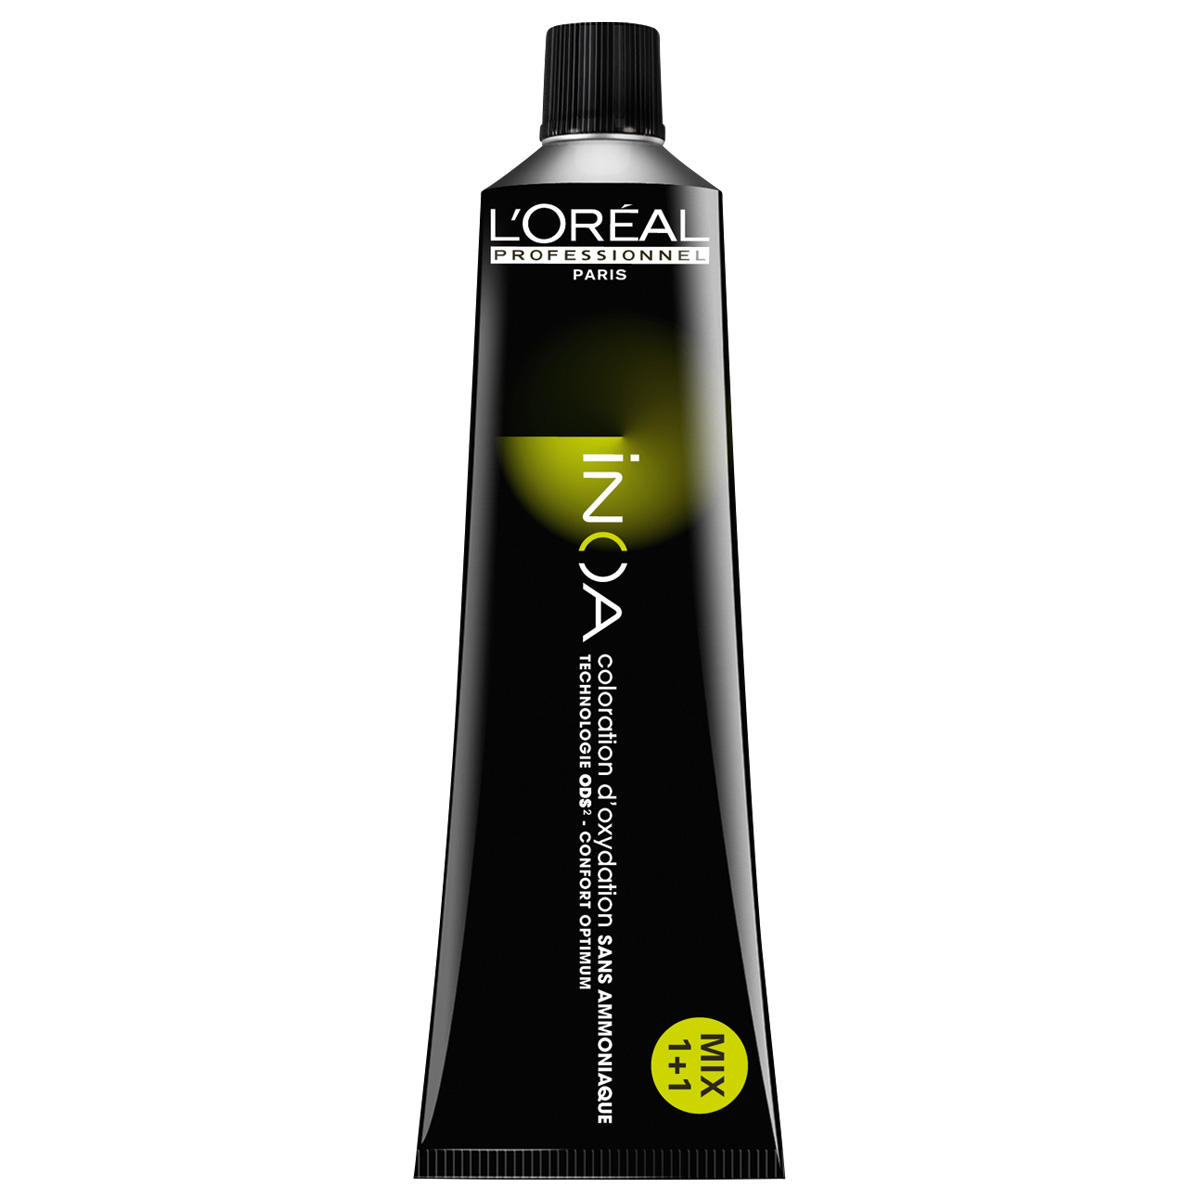 L'Oréal Professionnel Paris Coloration 6,0 blond foncé intense, Tube 60 ml - 1